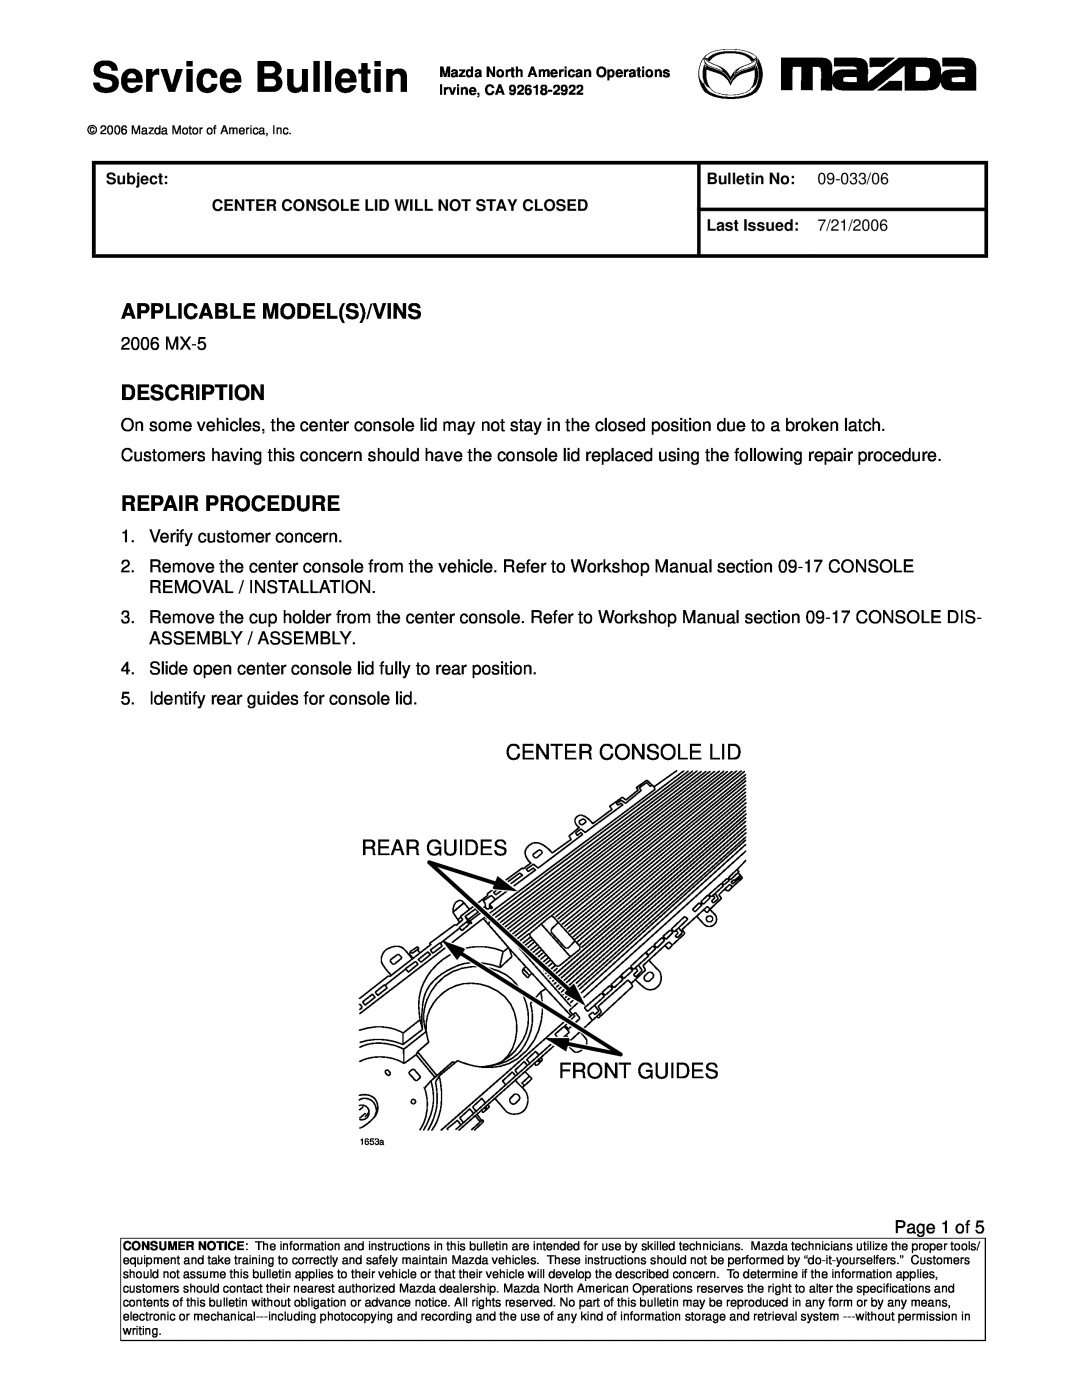 Mazda 2006 MX-5 specifications Applicable Models/Vins, Description, Repair Procedure 